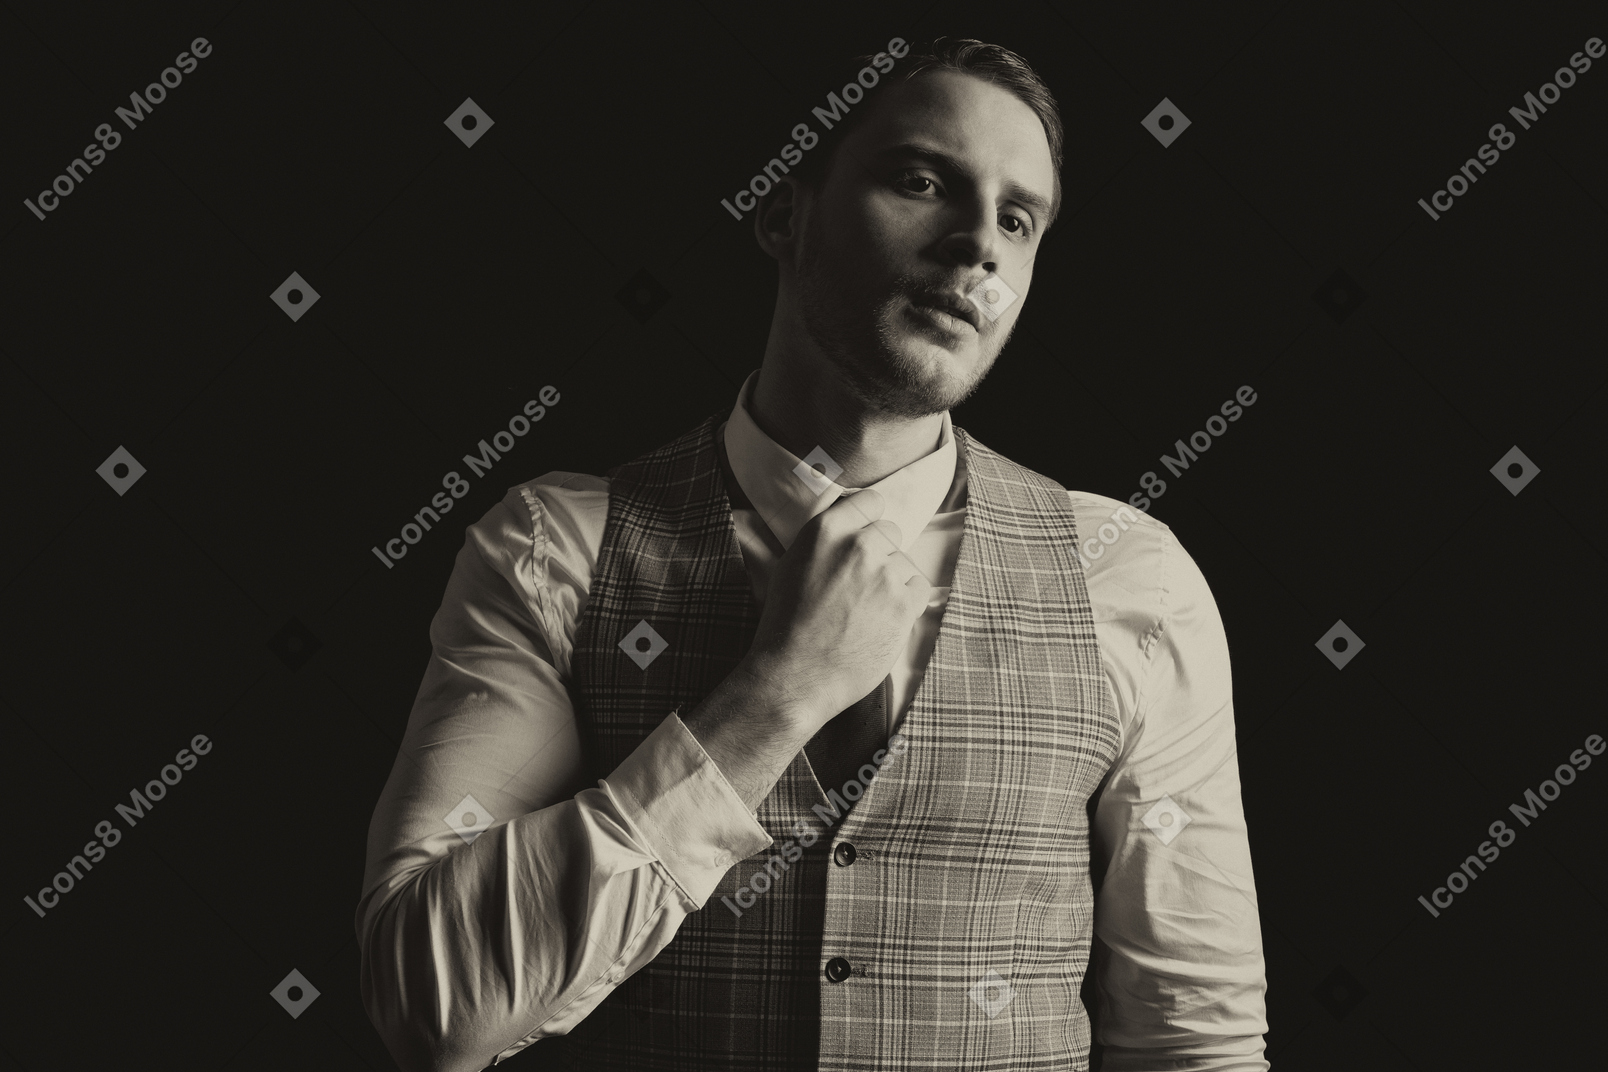 Gentleman in a suite adjusting tie